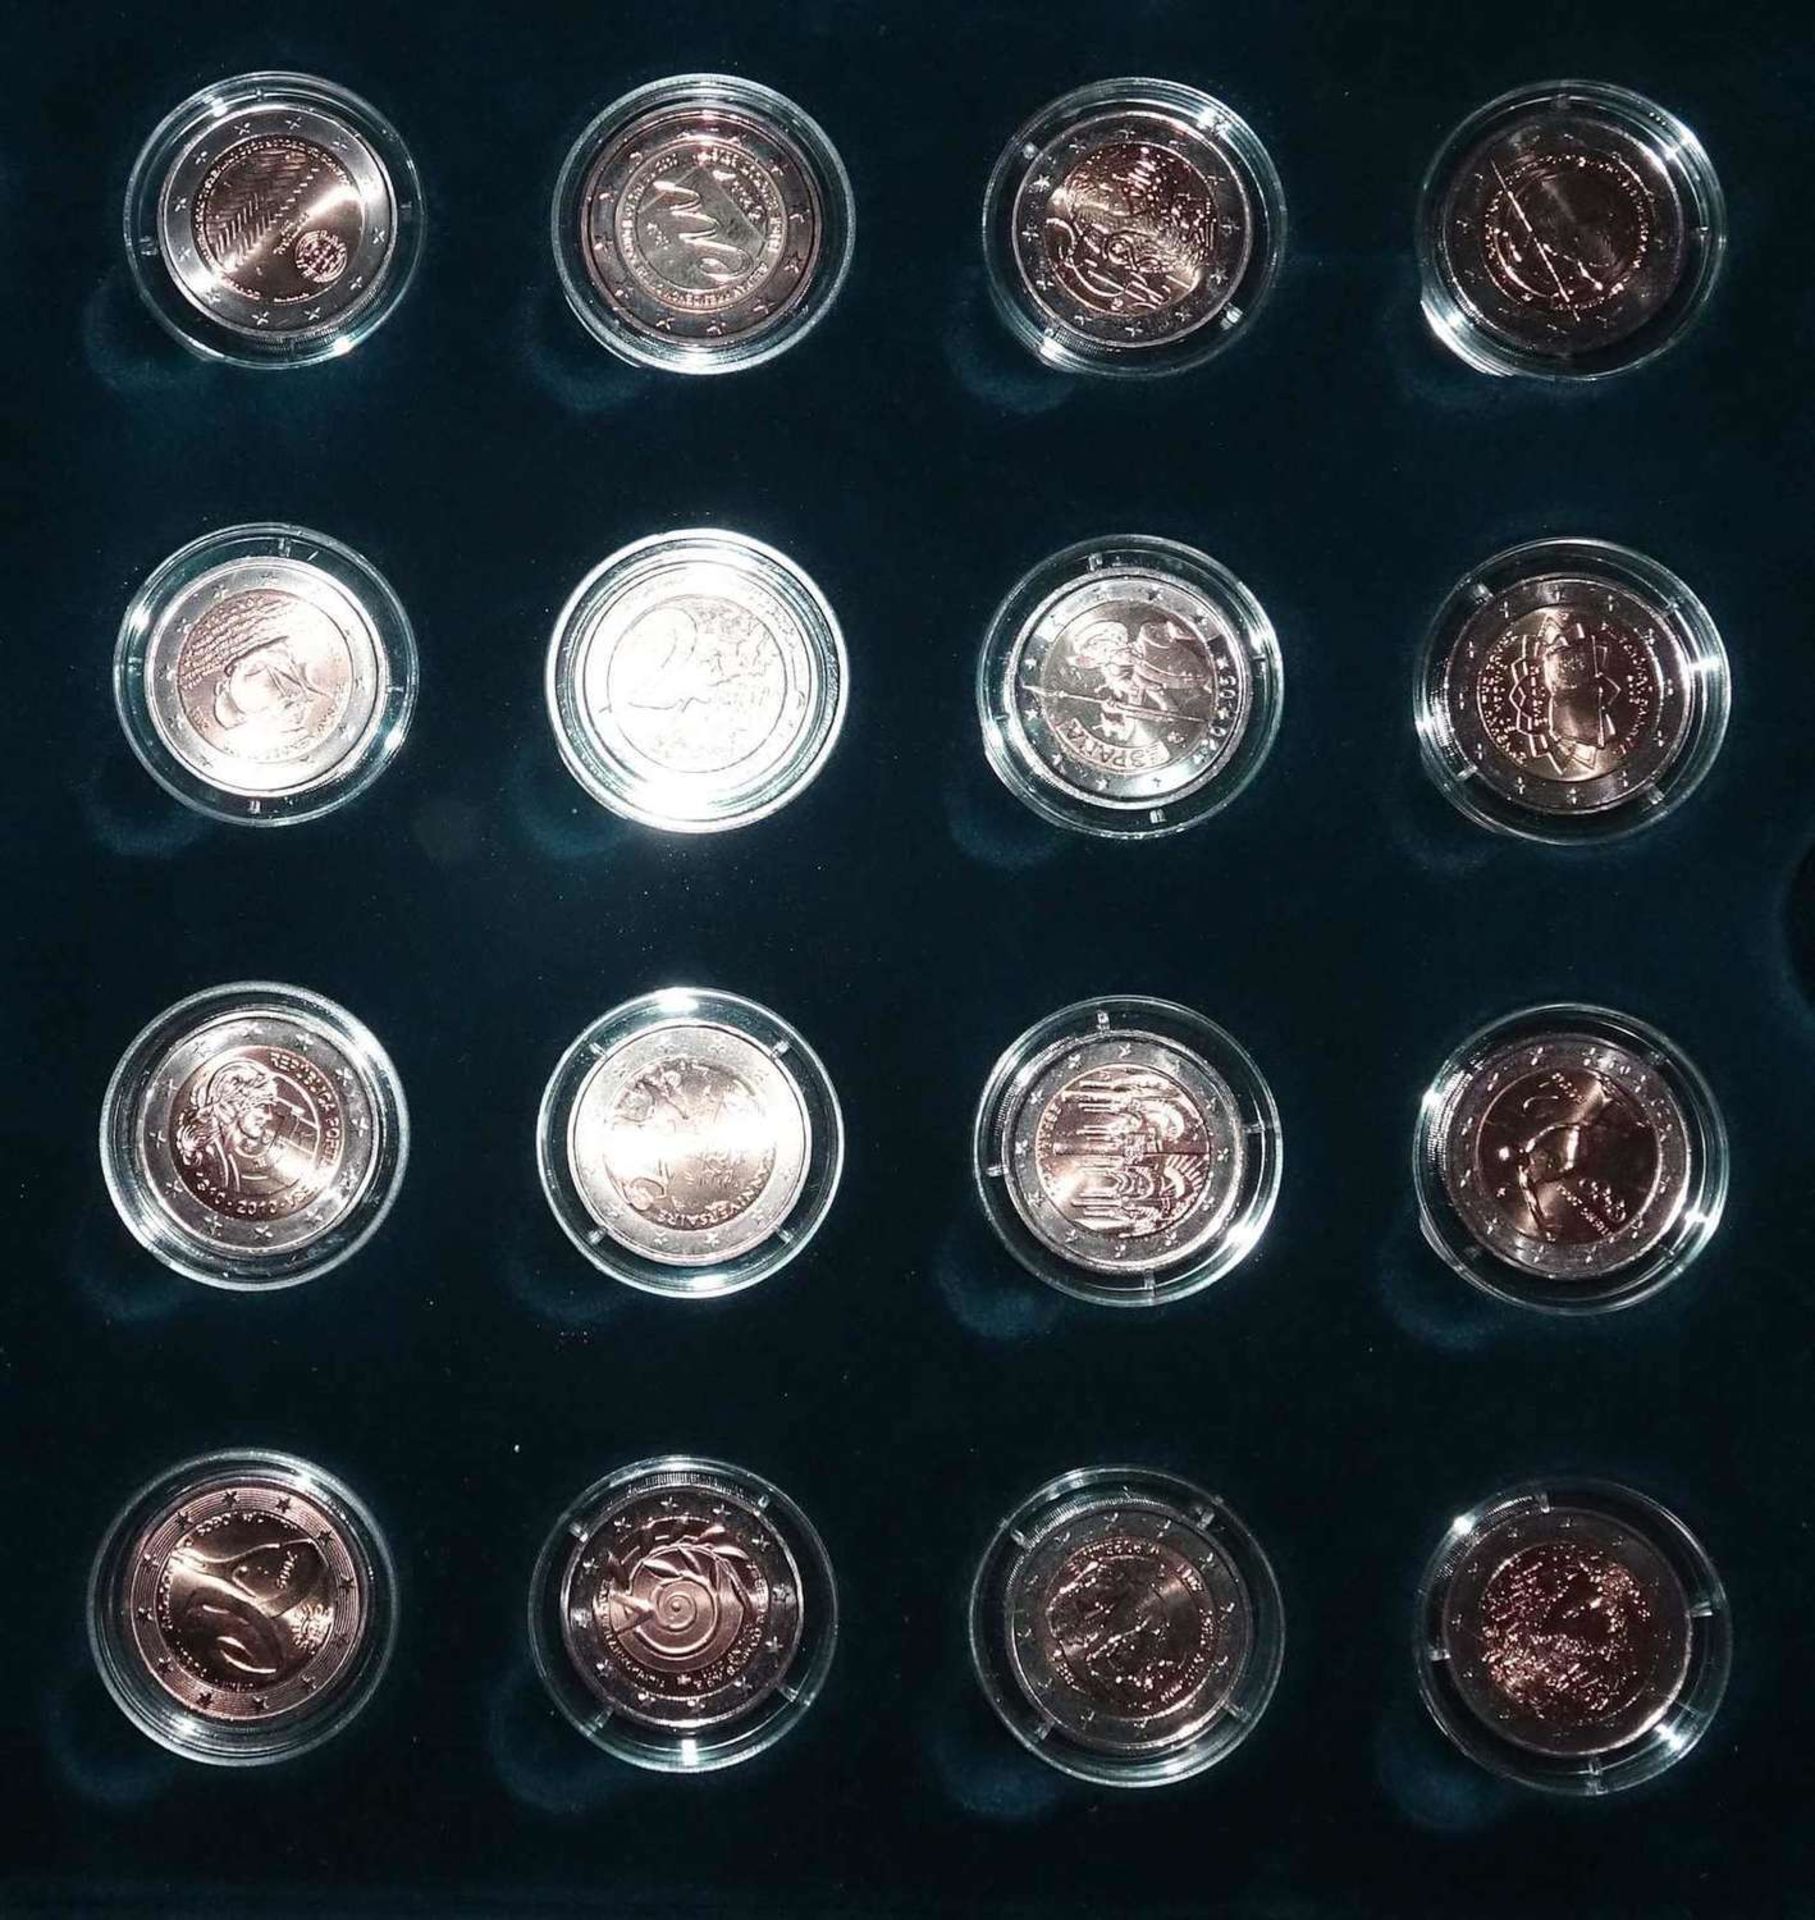 Europa - schönes Lot 2 Euro Münzen, meist unzirkuliert, insgesamt 16 Stück. Bitte besichtigen.Europe - Bild 2 aus 2